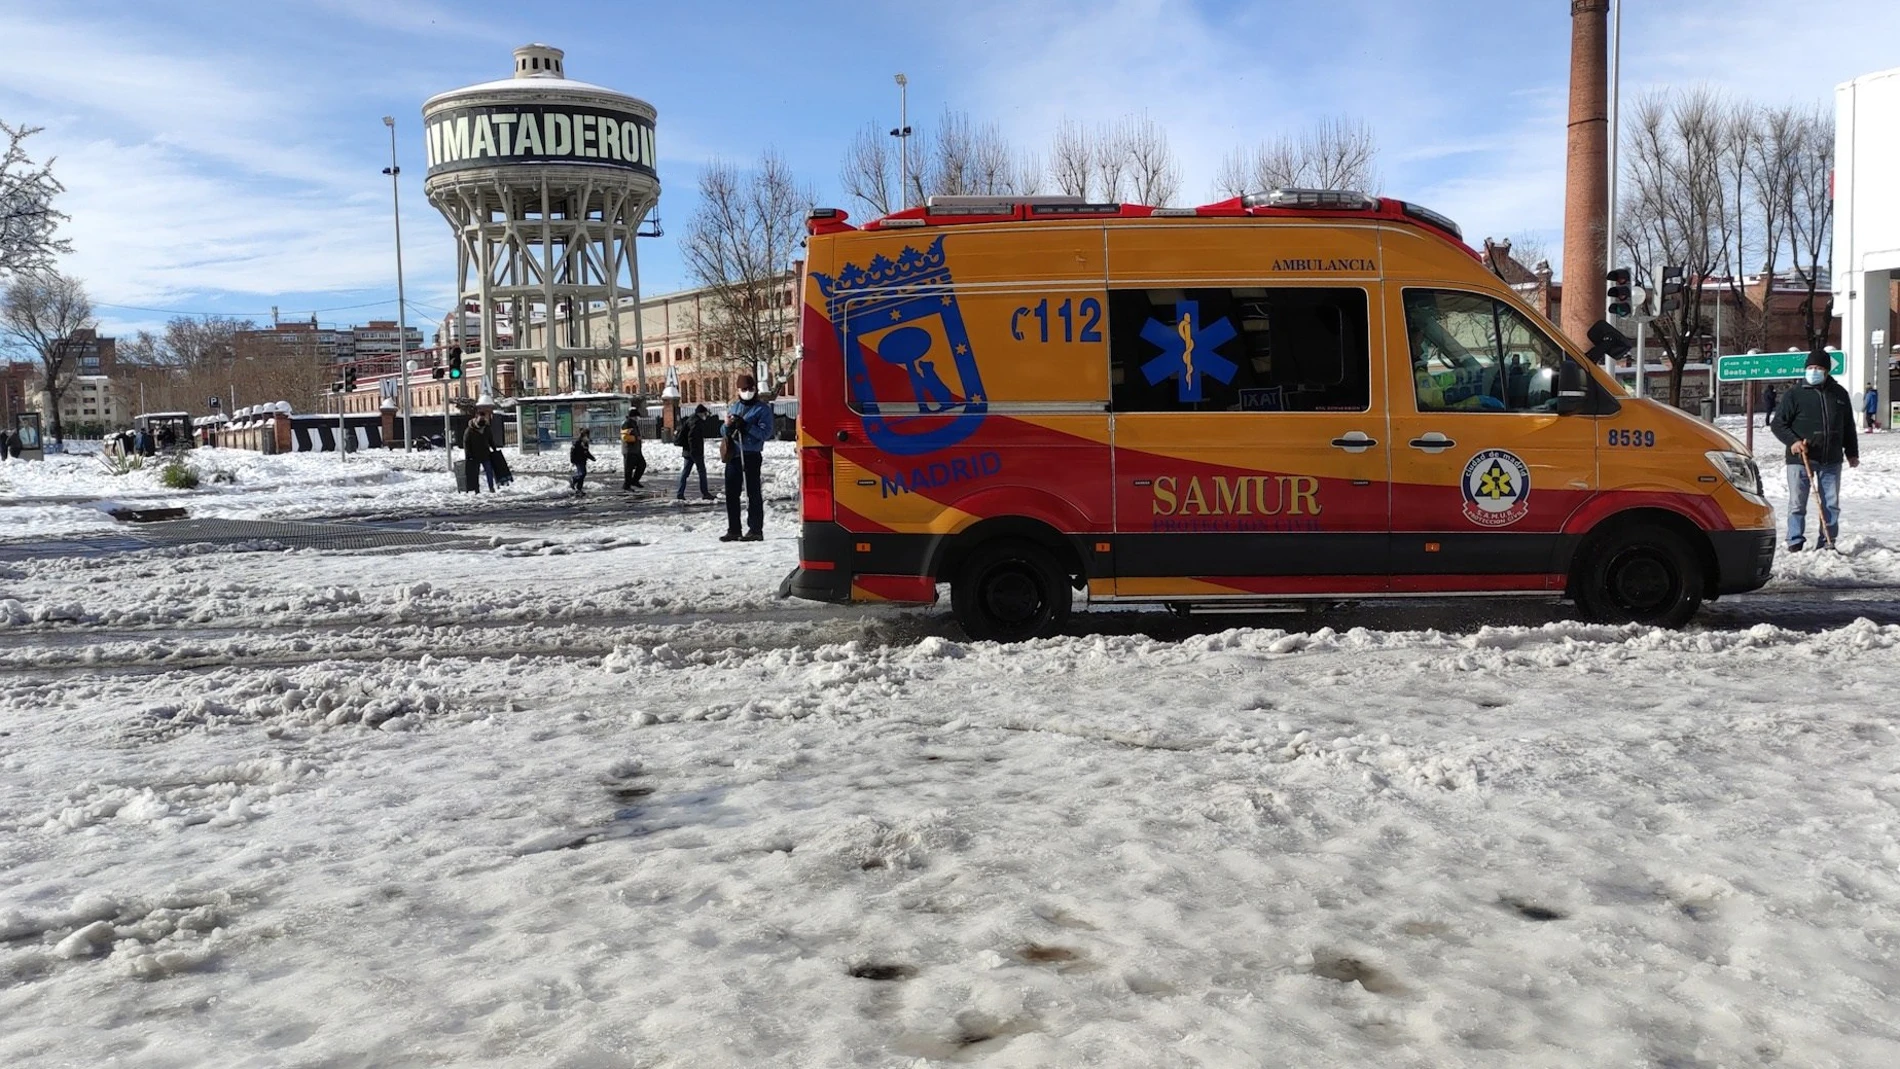 Una ambulancia del SAMUR circula por la Plaza de Legazpi en Madrid